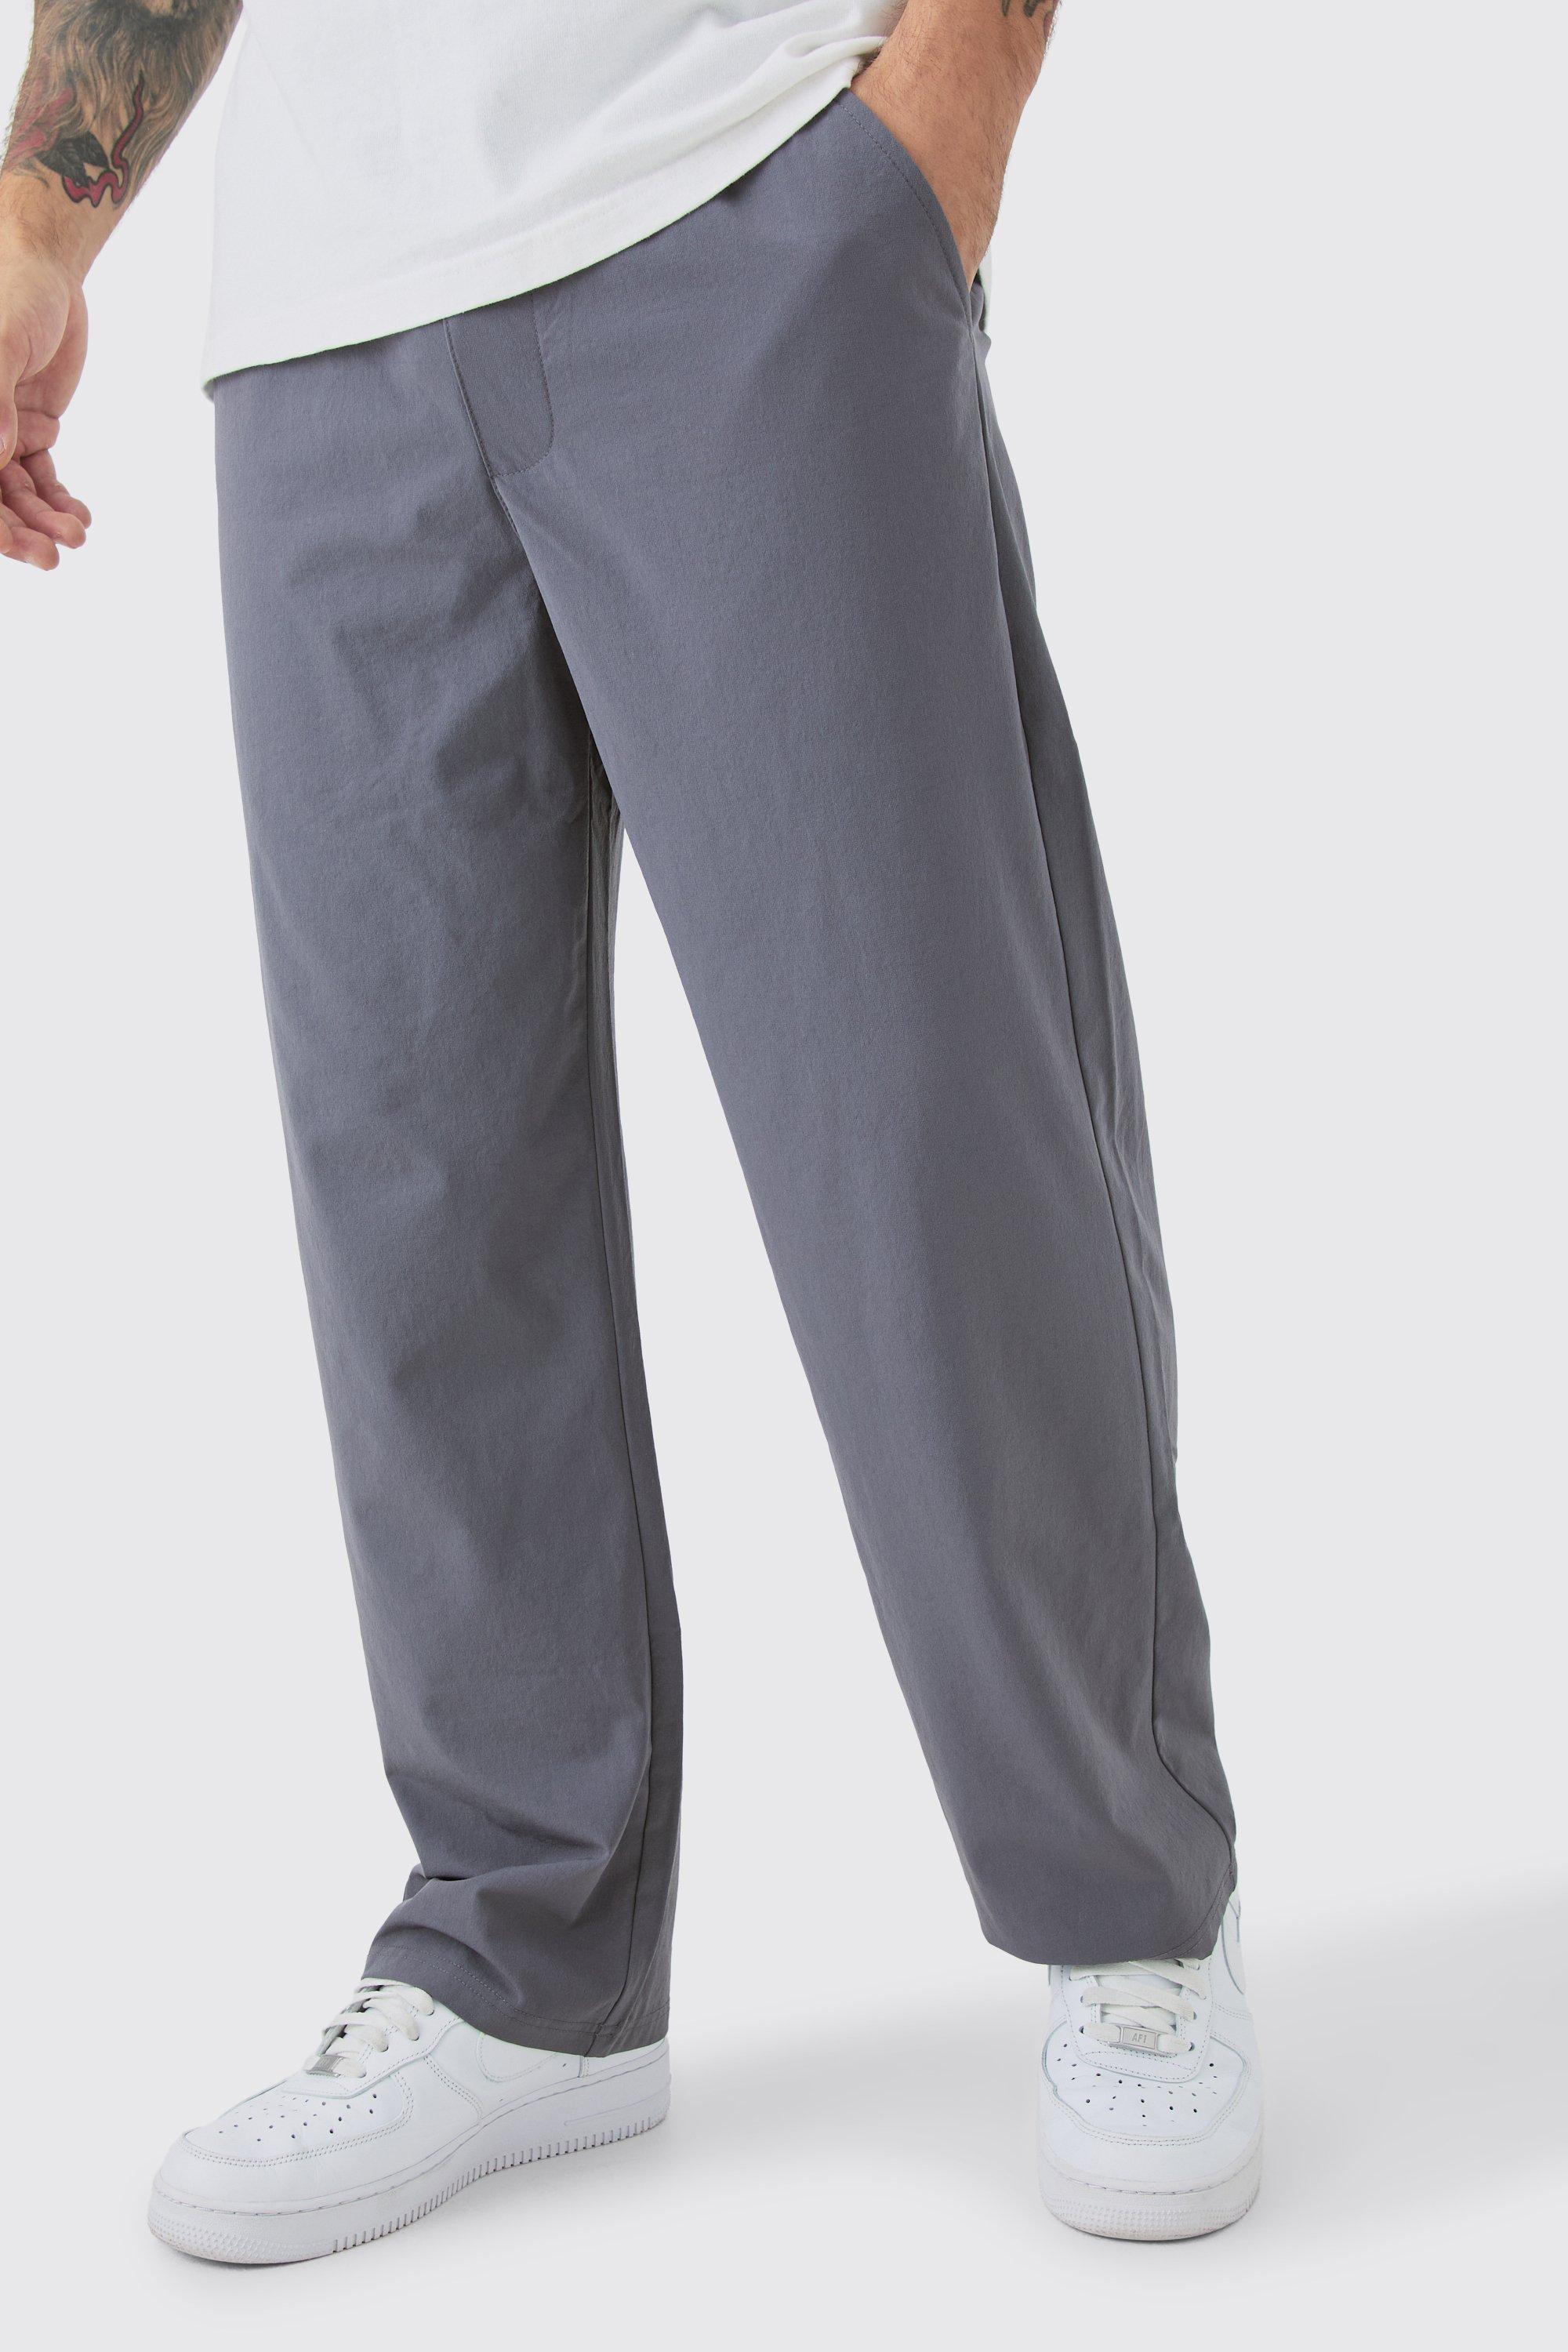 Image of Pantaloni alla caviglia rilassati in Stretch leggero elasticizzato, Grigio